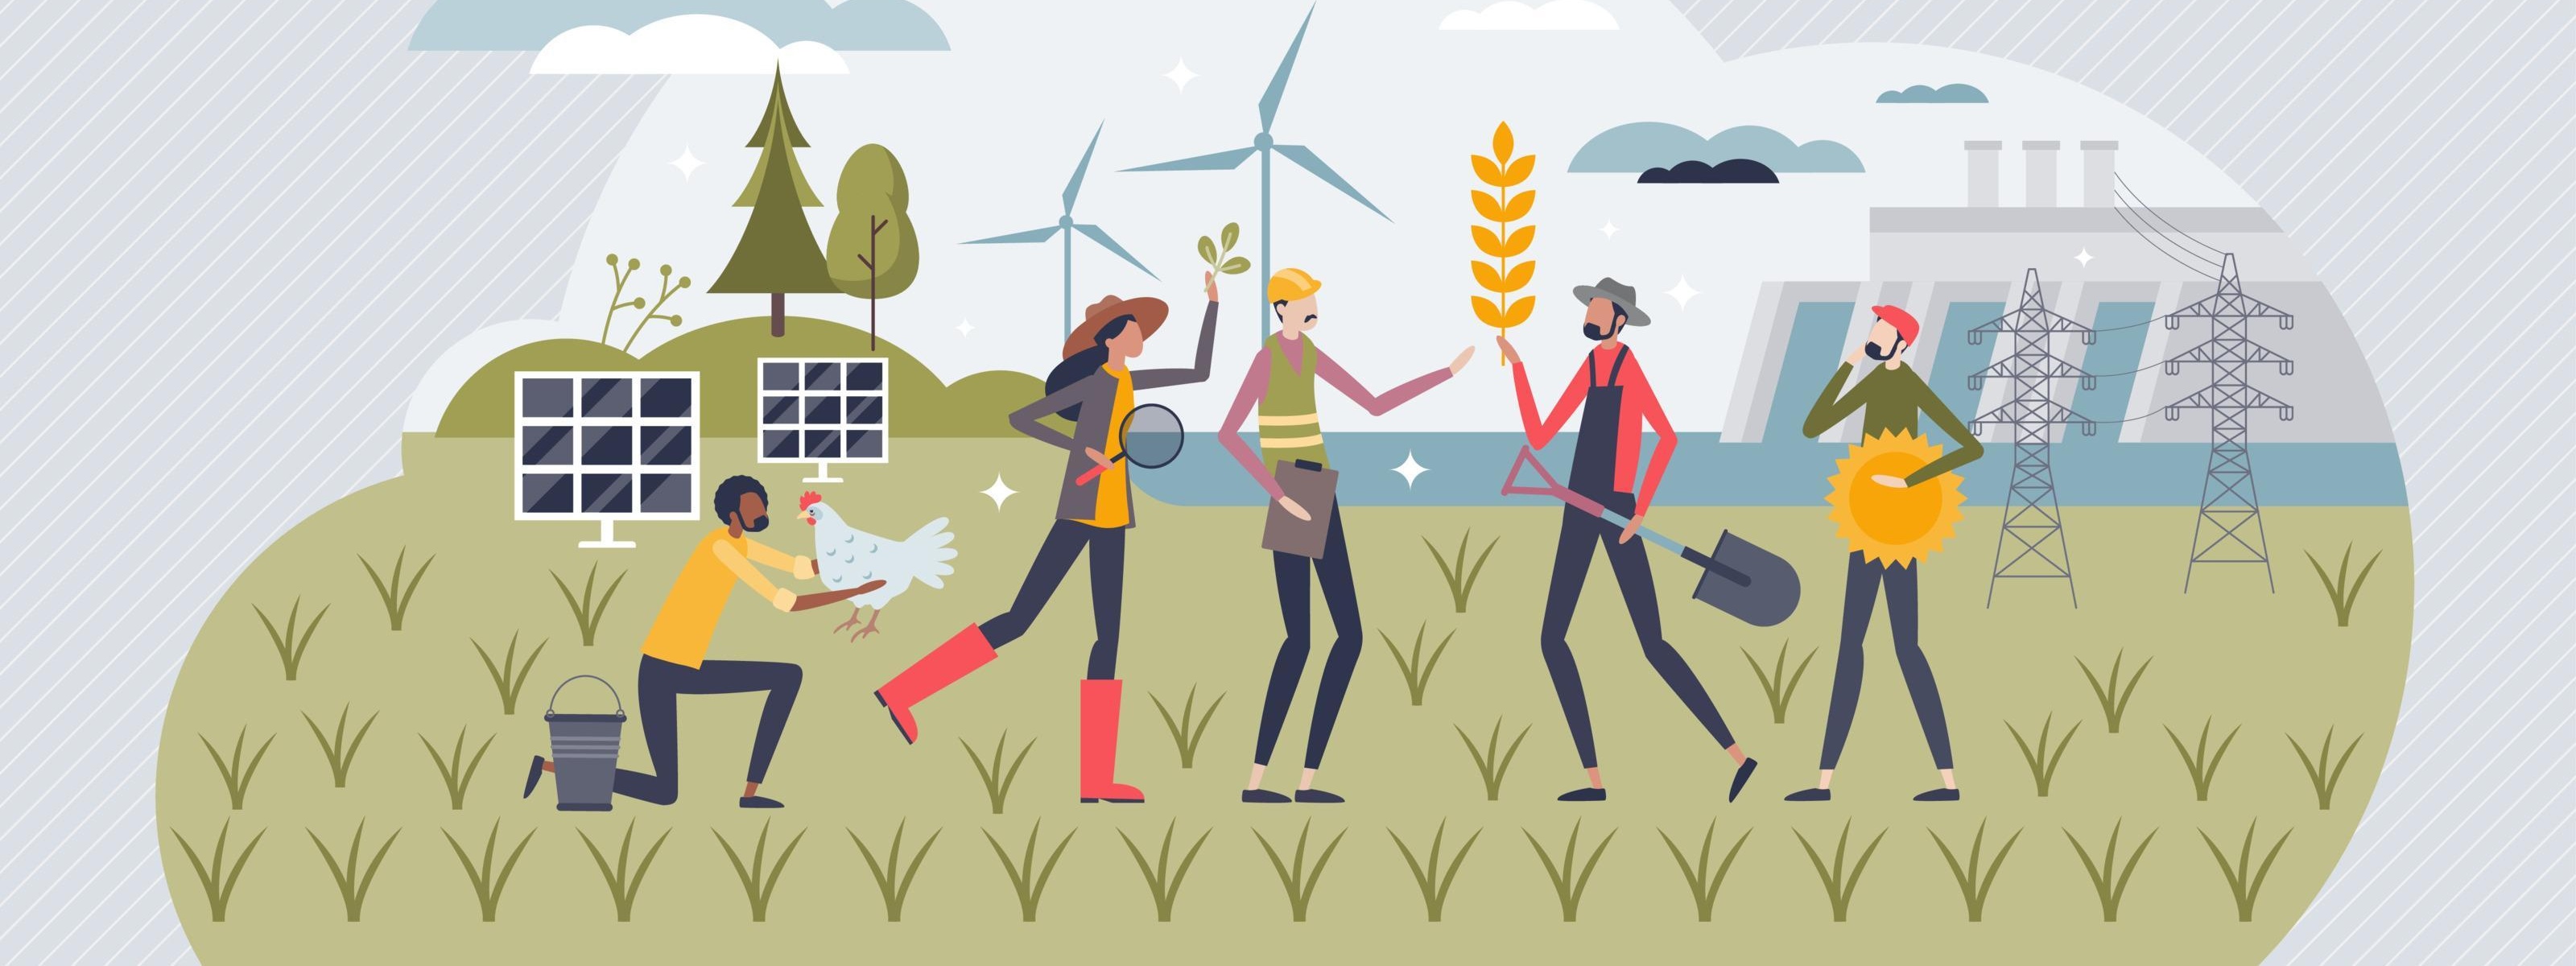 Illustration mehrerer Personen in unterschiedlichen Berufskleidungen auf Wiese stehend, im Hintergrund Bäume, Windräder, Solarpaneele und Wasserkraftwerk